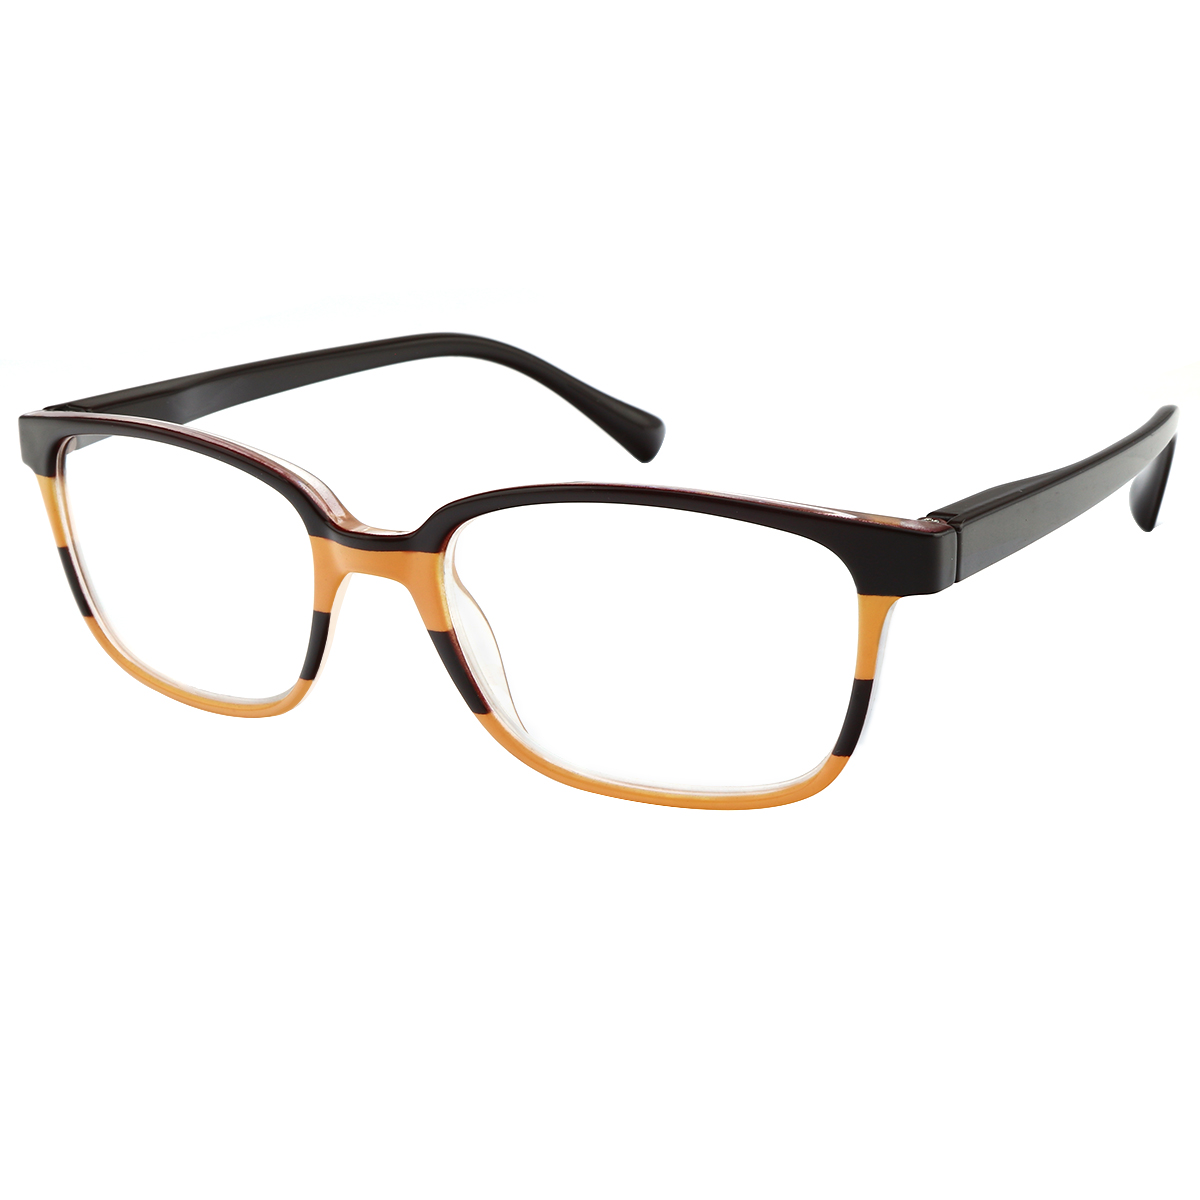 Lois - Rectangle Black-Yellow Reading Glasses for Men & Women